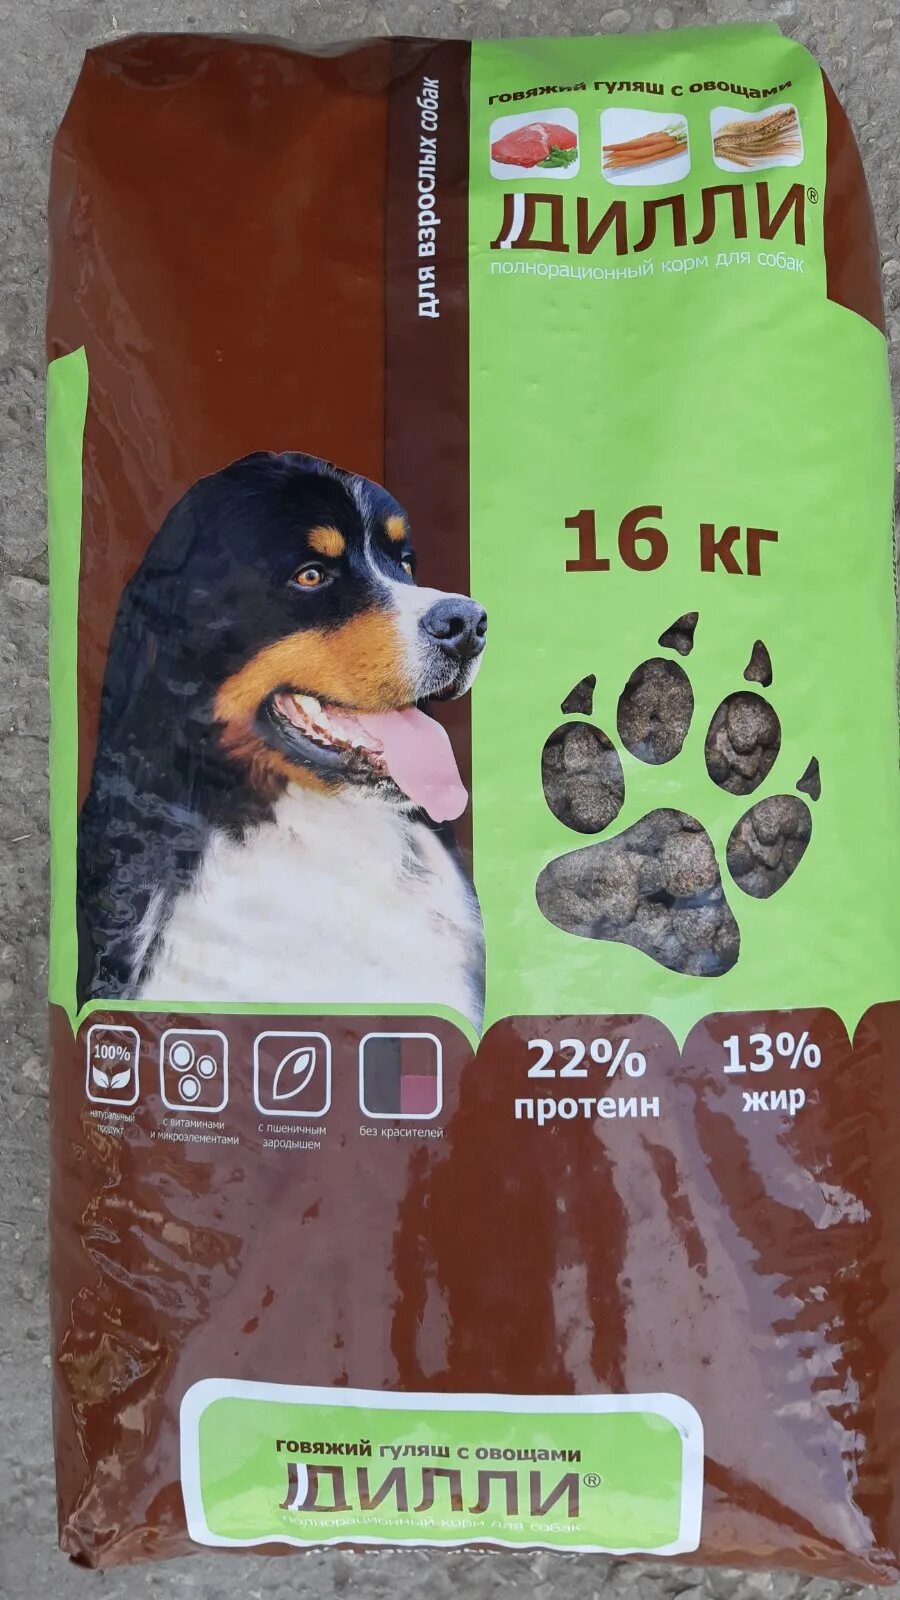 Купить корм для собак 14 кг. Корм Дилли для собак 16 кг. Сухой корм Дилли 16 кг. Дилли корм для собак 4 кг. Дилли корм для собак состав.